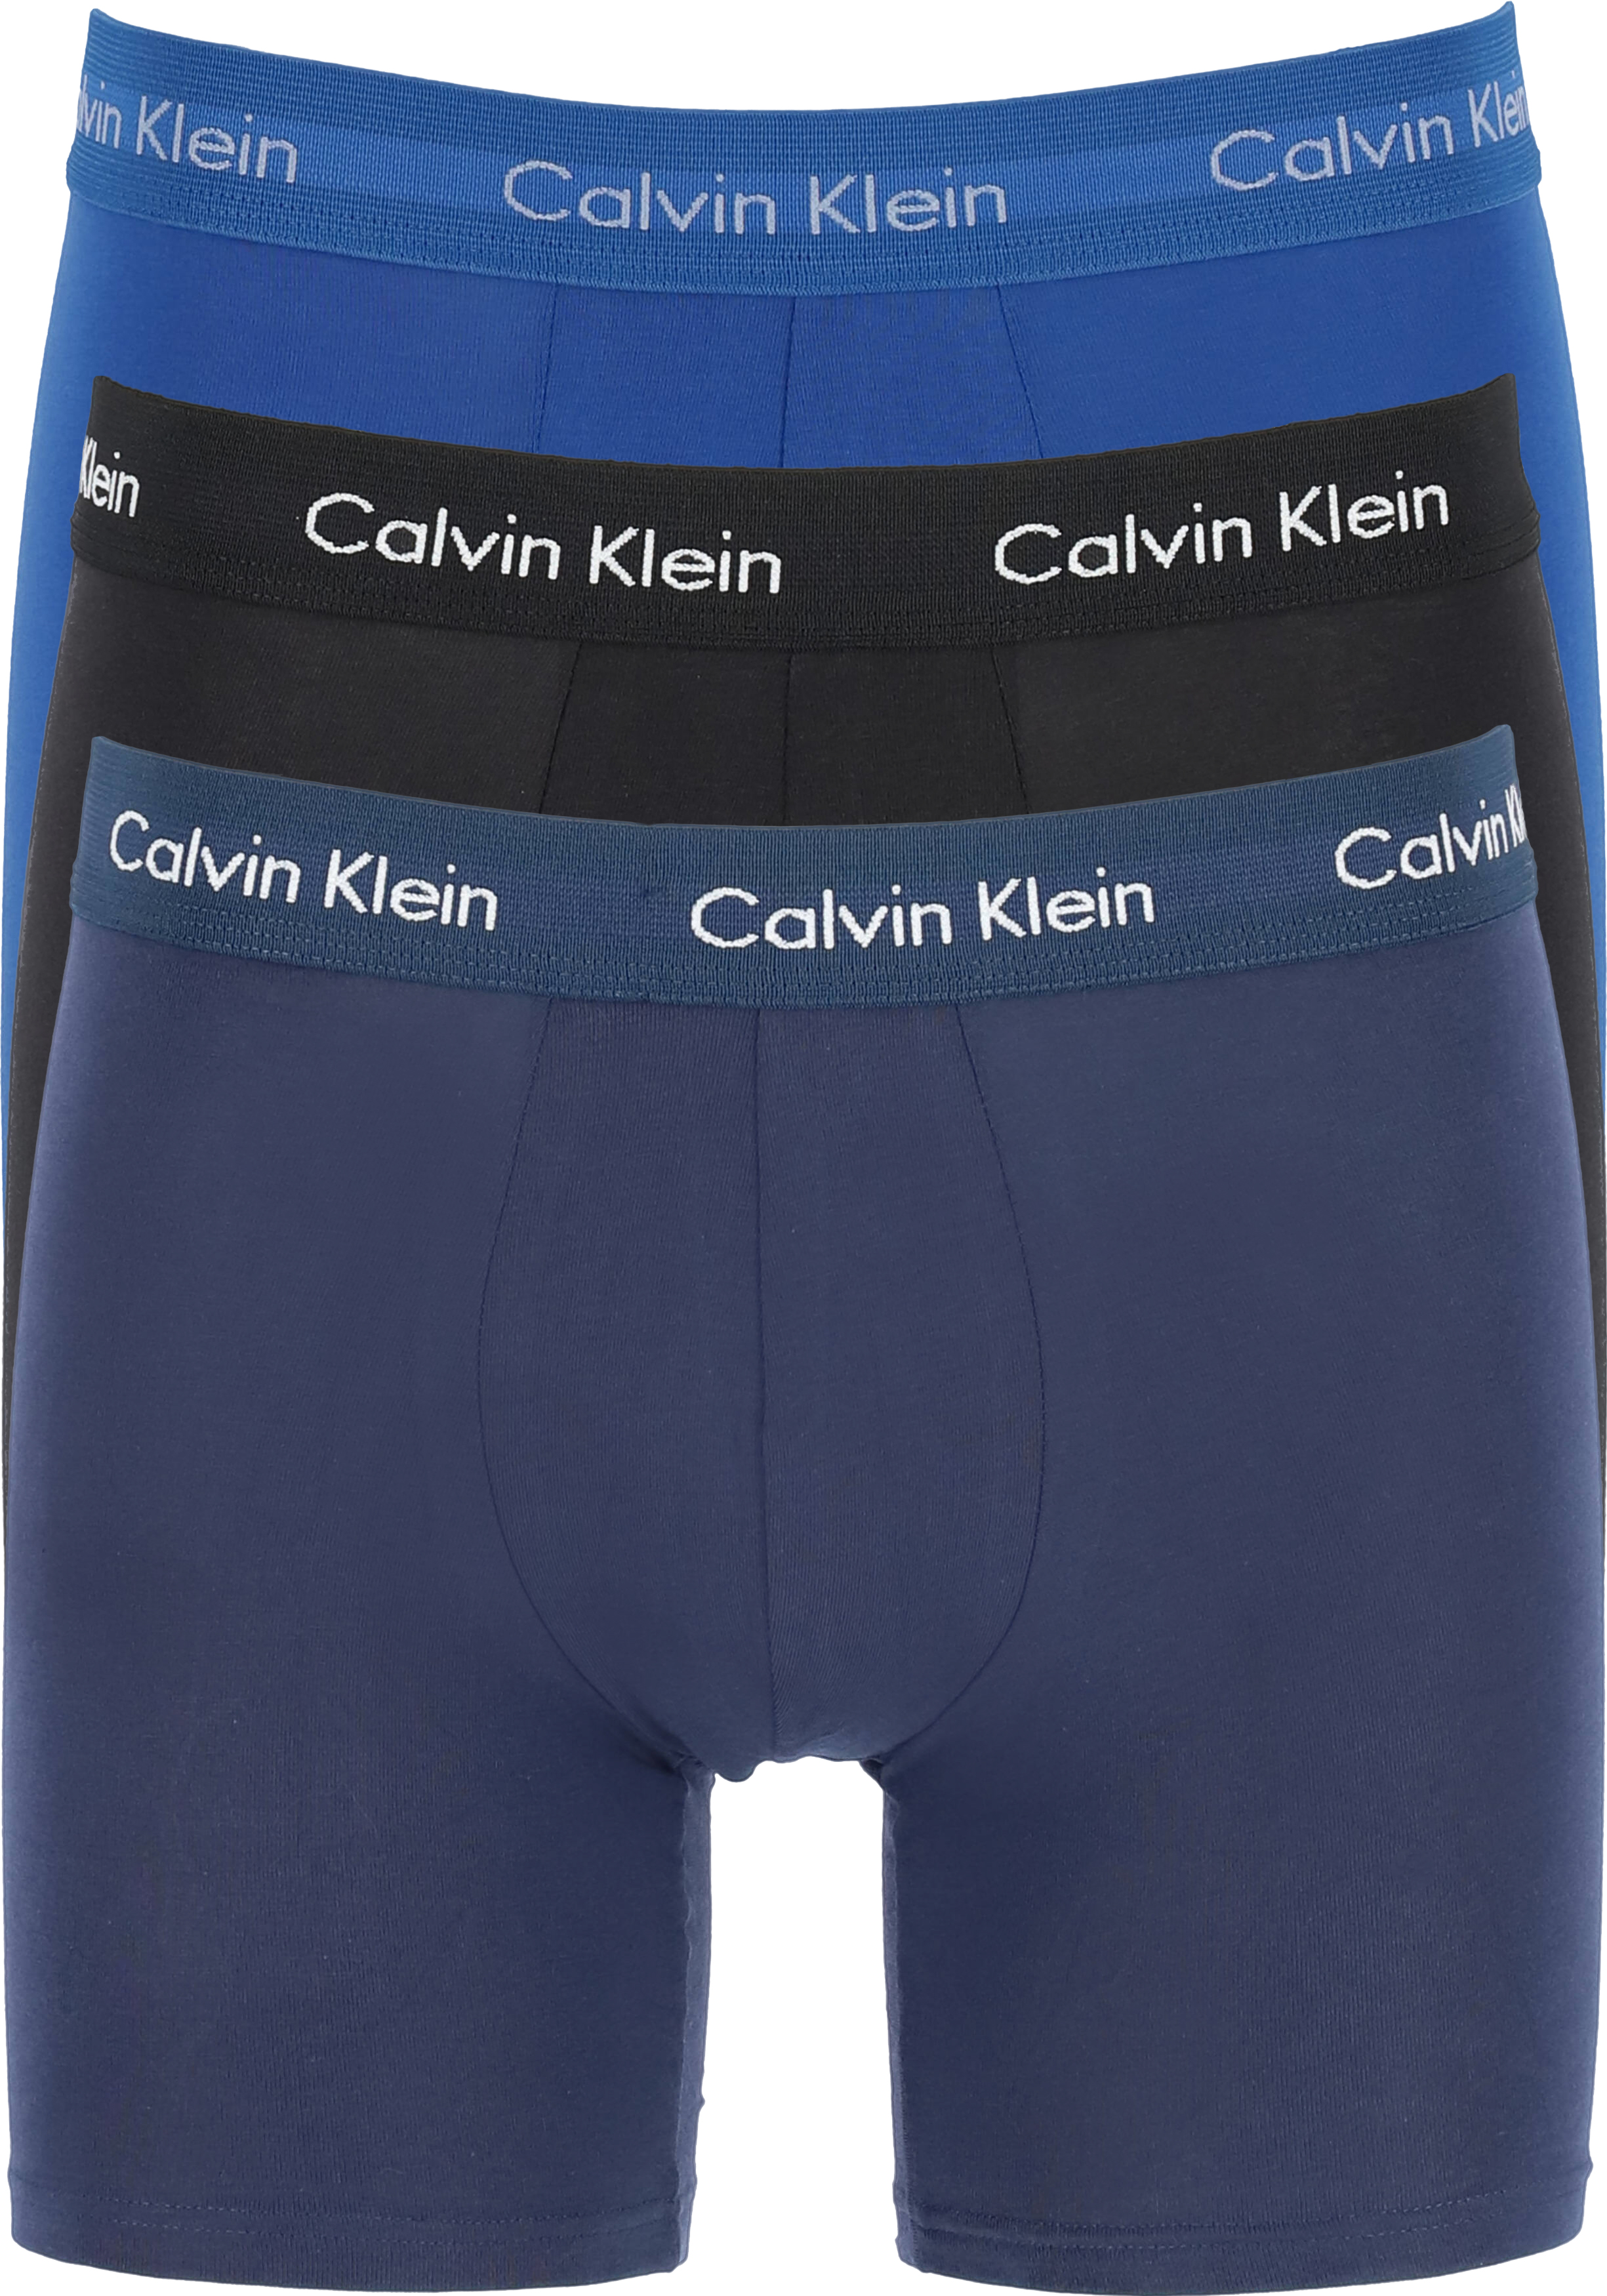 Oefening Nacht kan niet zien Calvin Klein Cotton Stretch boxer brief (3-pack), heren boxers extra... -  Shop de nieuwste voorjaarsmode